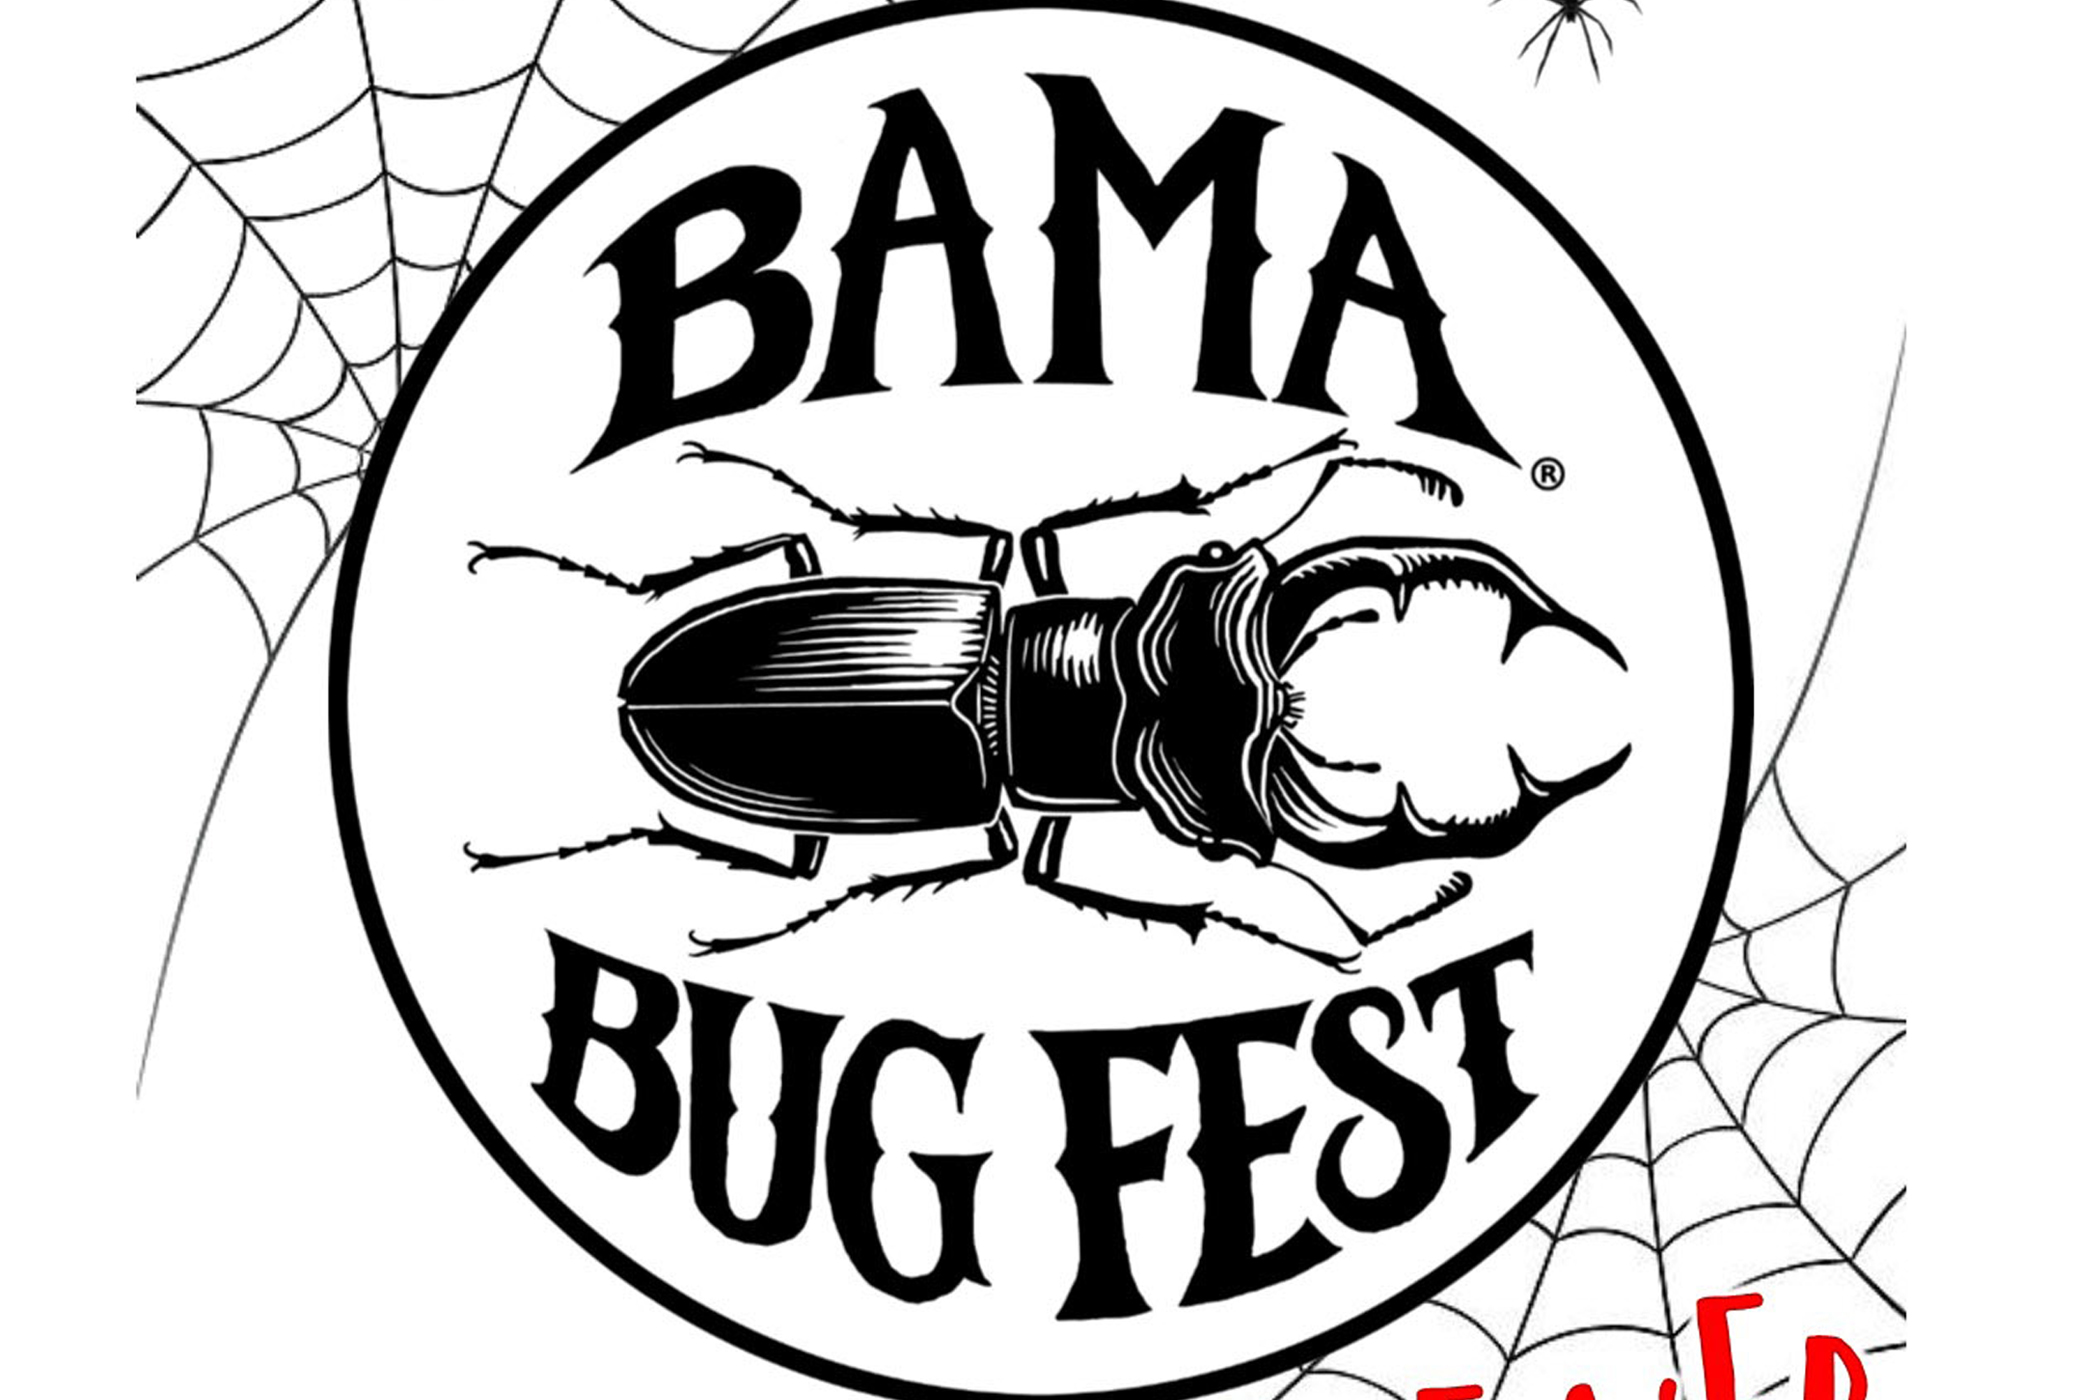 Bama Bug Fest Goes on the Web University of Alabama News